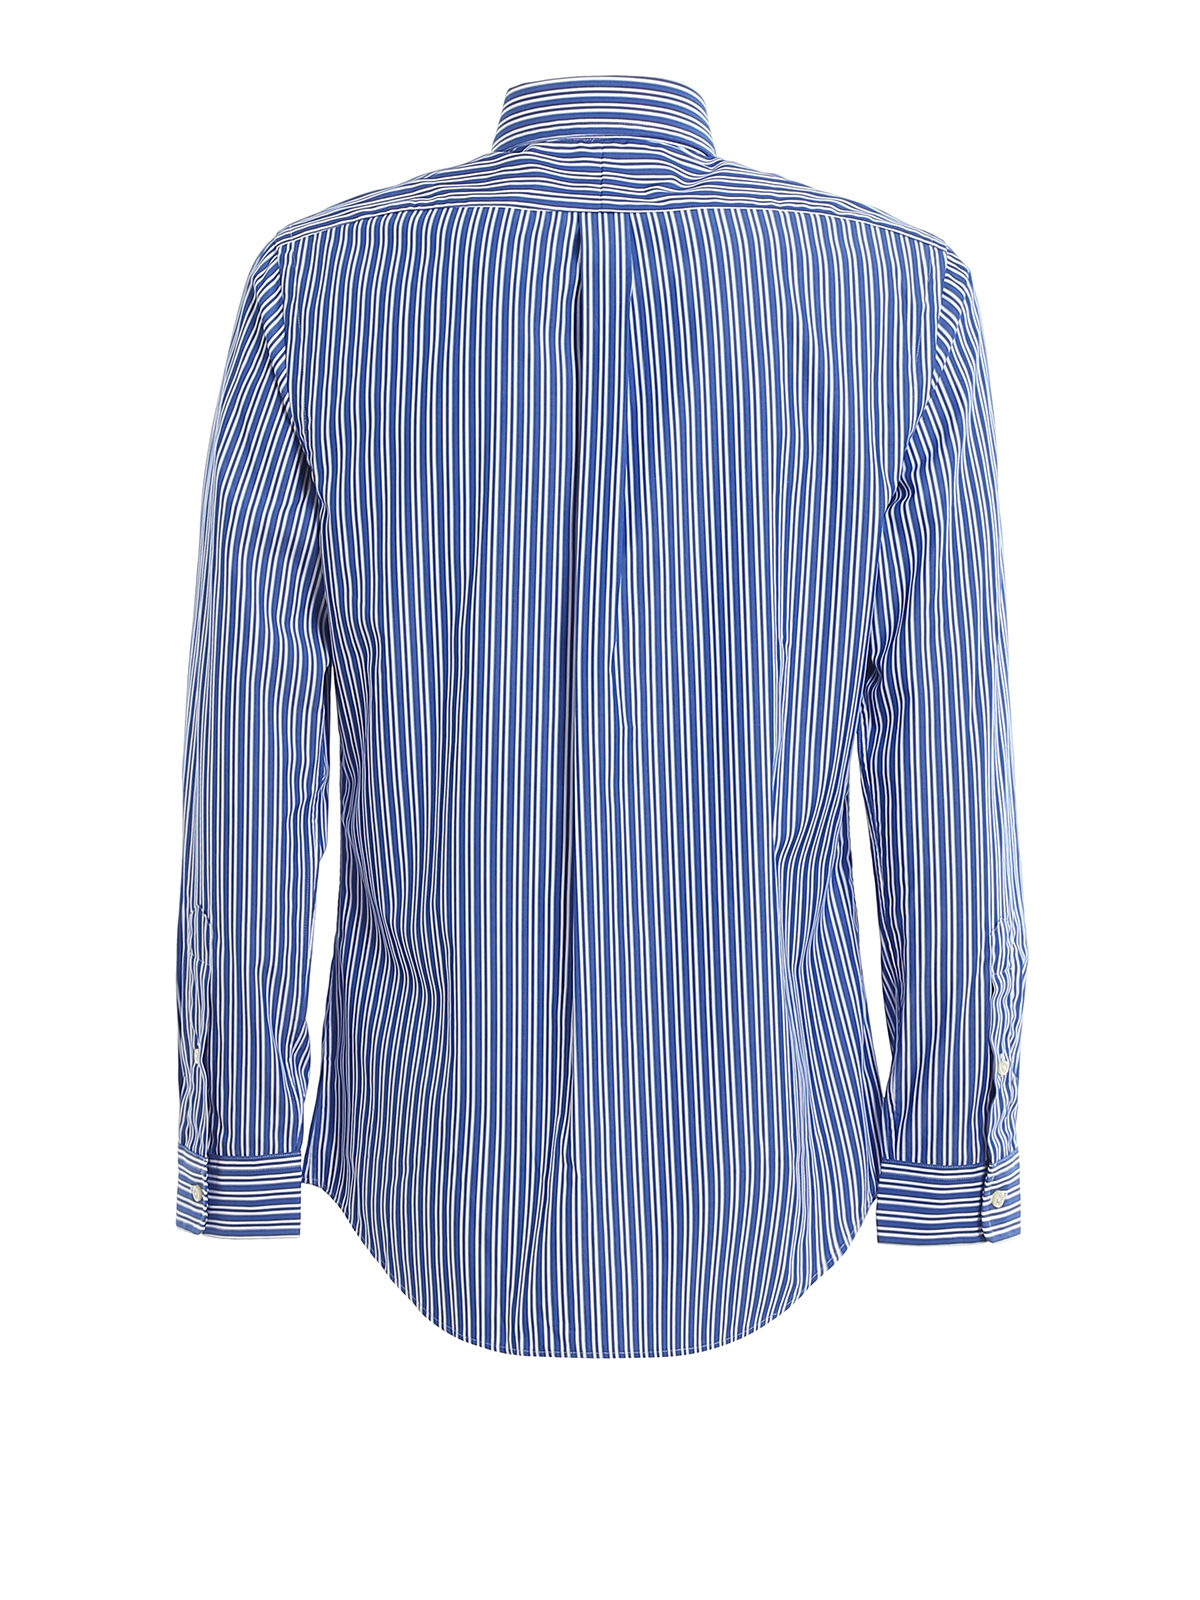 polo ralph lauren blue striped shirt